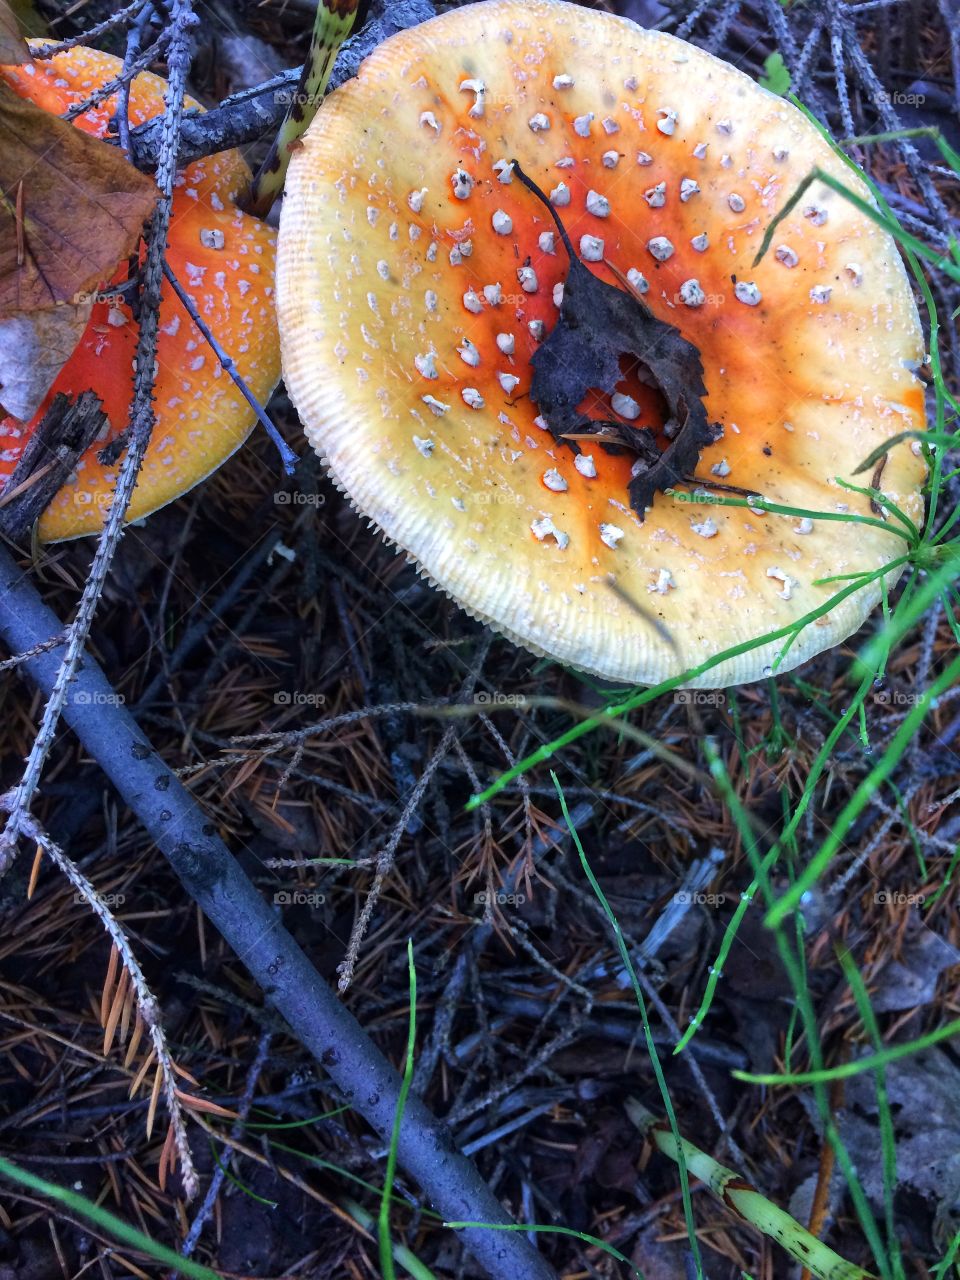 Mushroom toadstool 